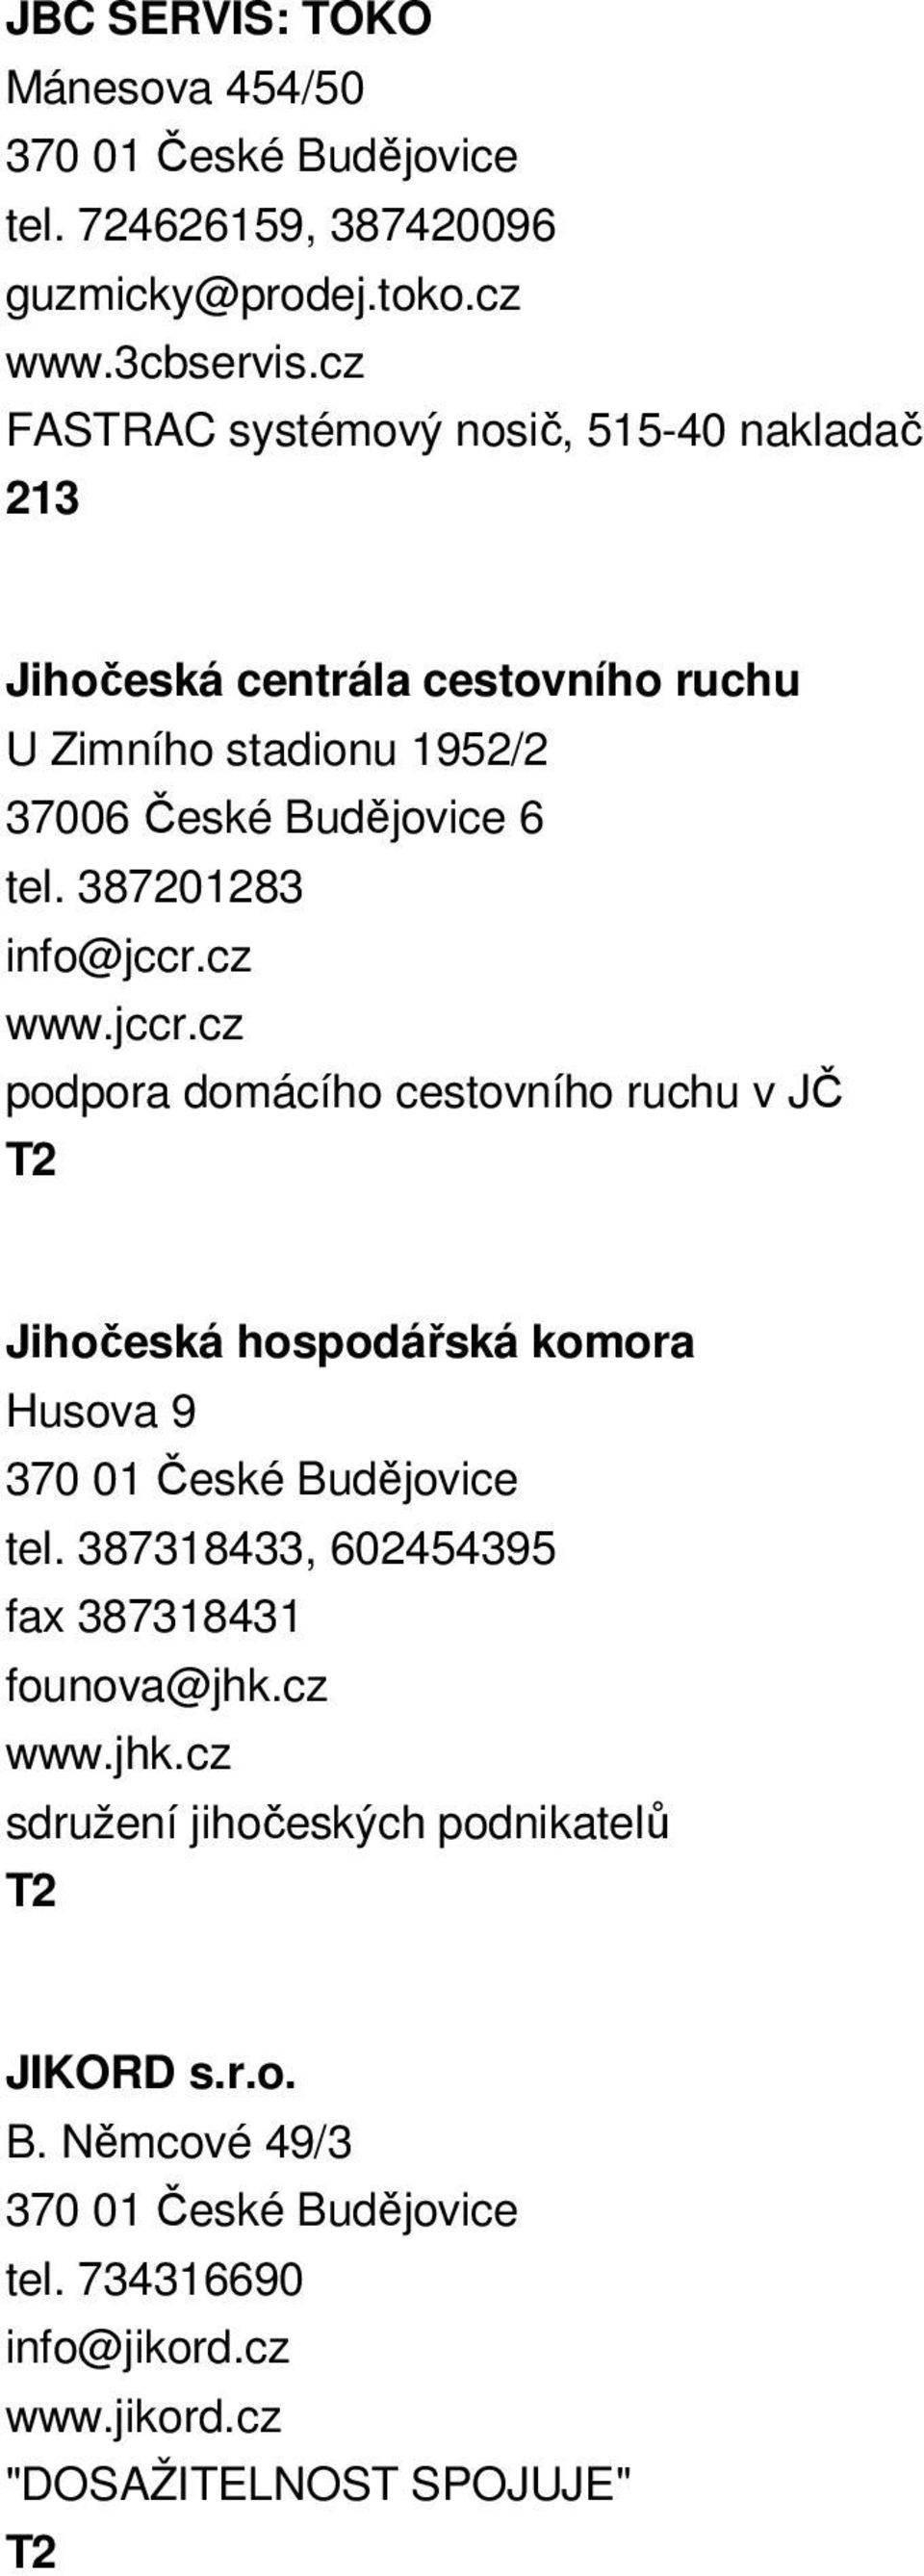 tel. 387201283 info@jccr.cz www.jccr.cz podpora domácího cestovního ruchu v JČ Jihočeská hospodářská komora Husova 9 tel.